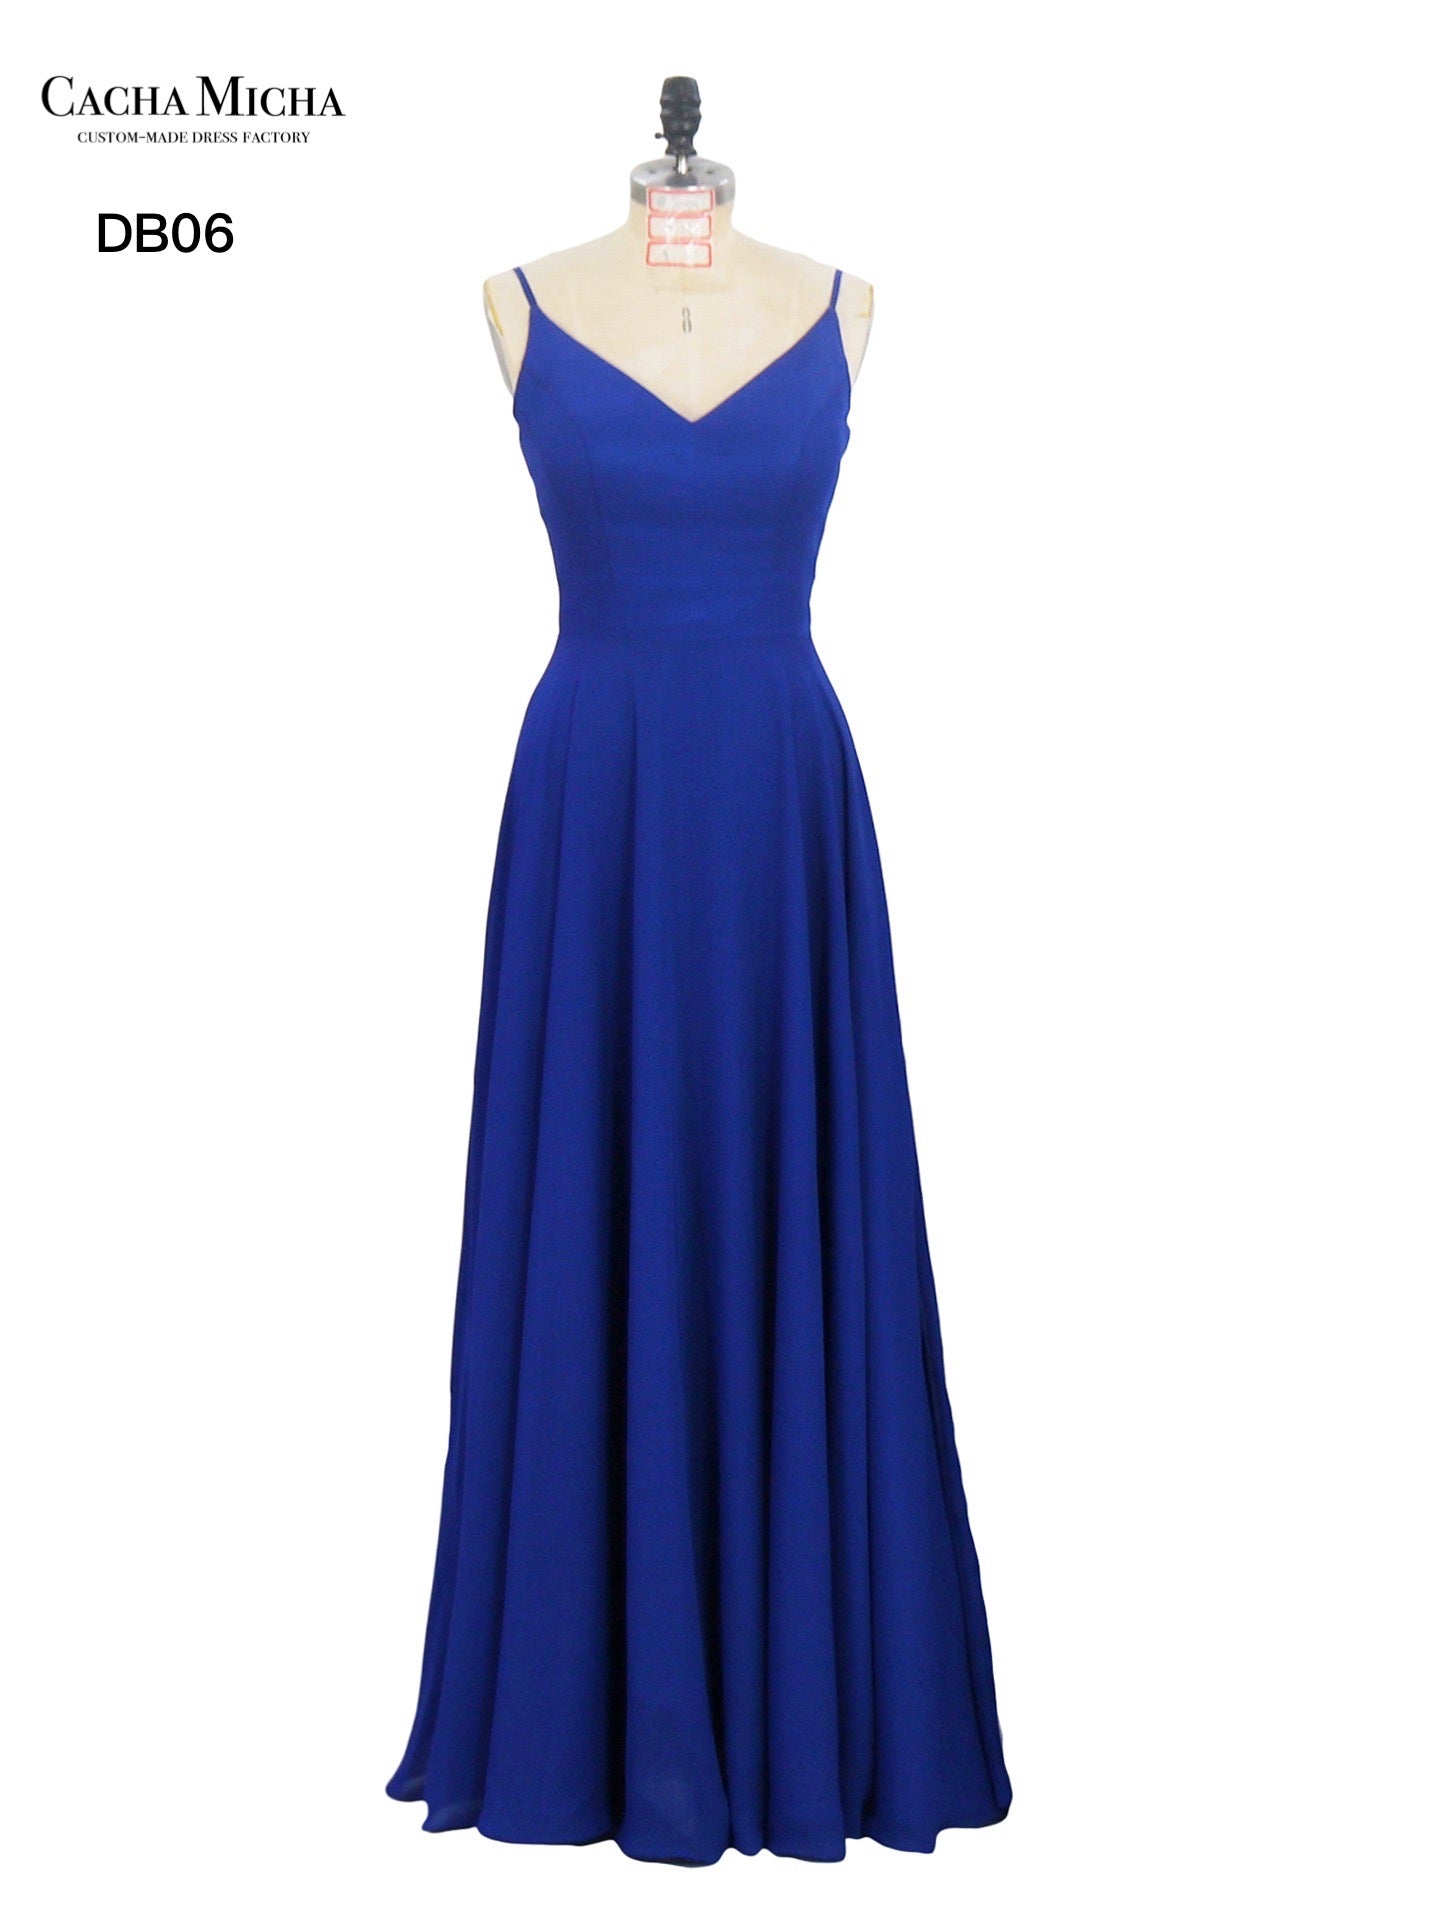 Spaghetti Straps Royal Blue Chiffon Bridesmaid Dress DB06